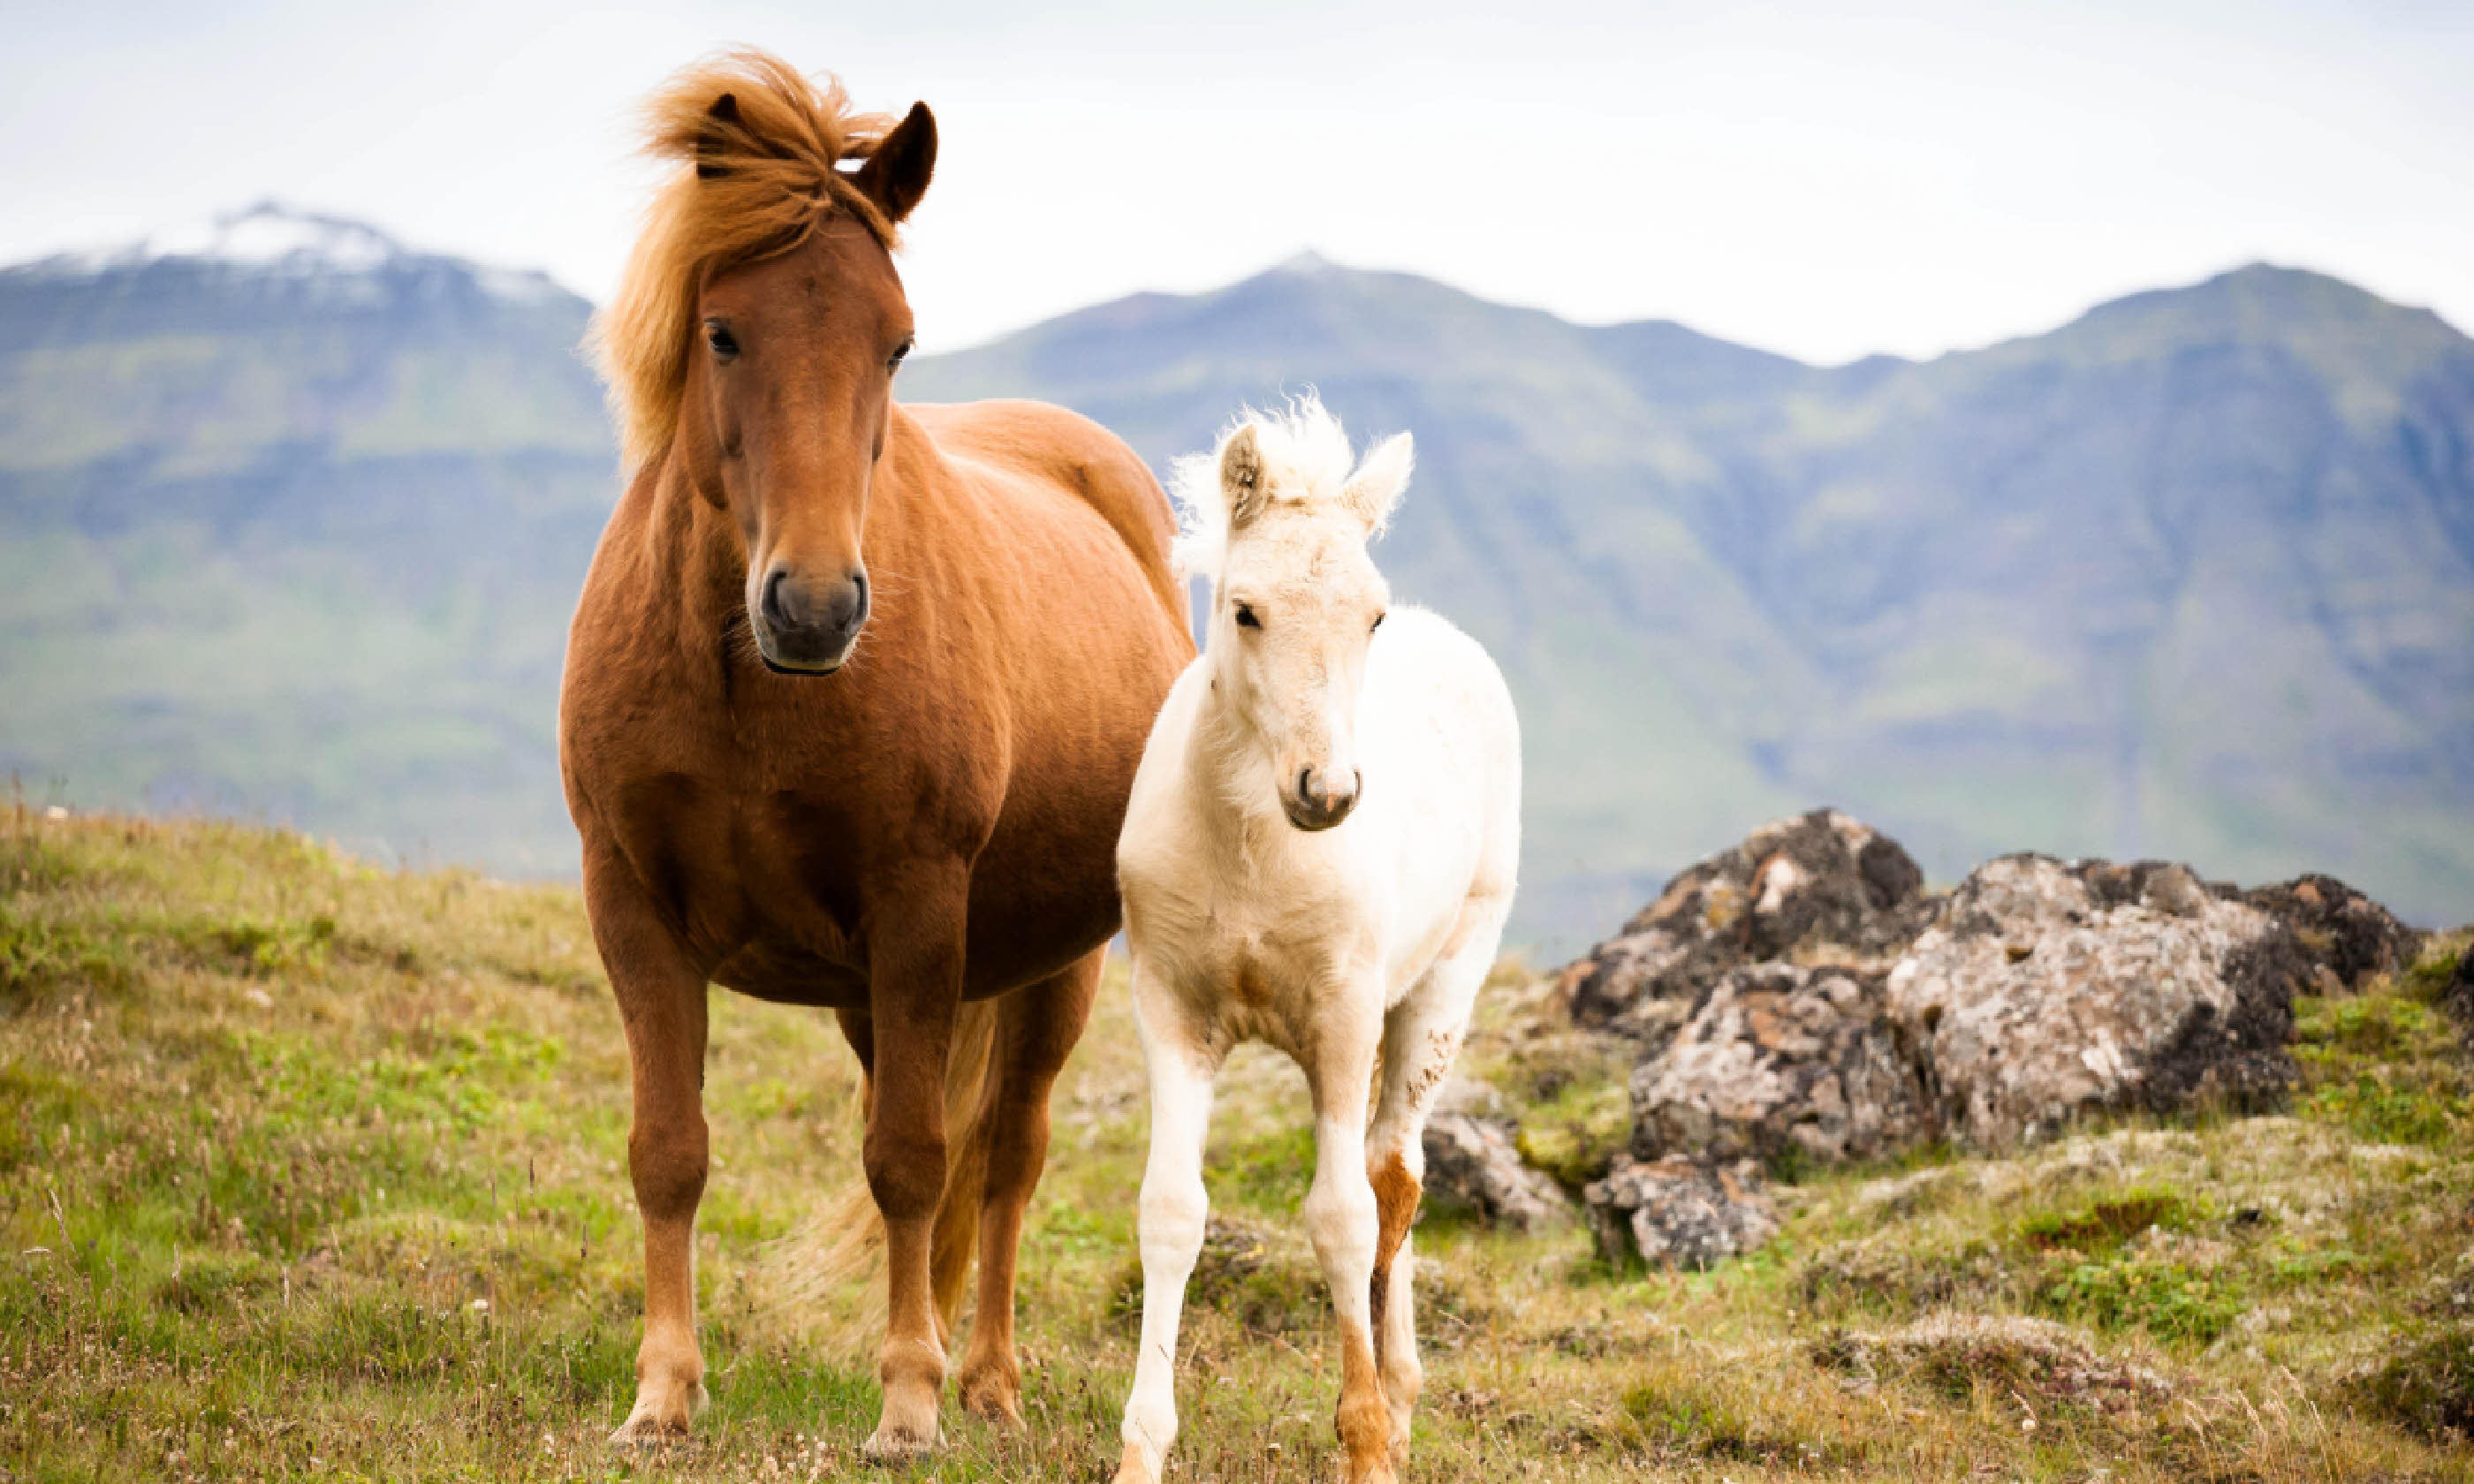 Horses in Iceland (Shutterstock)